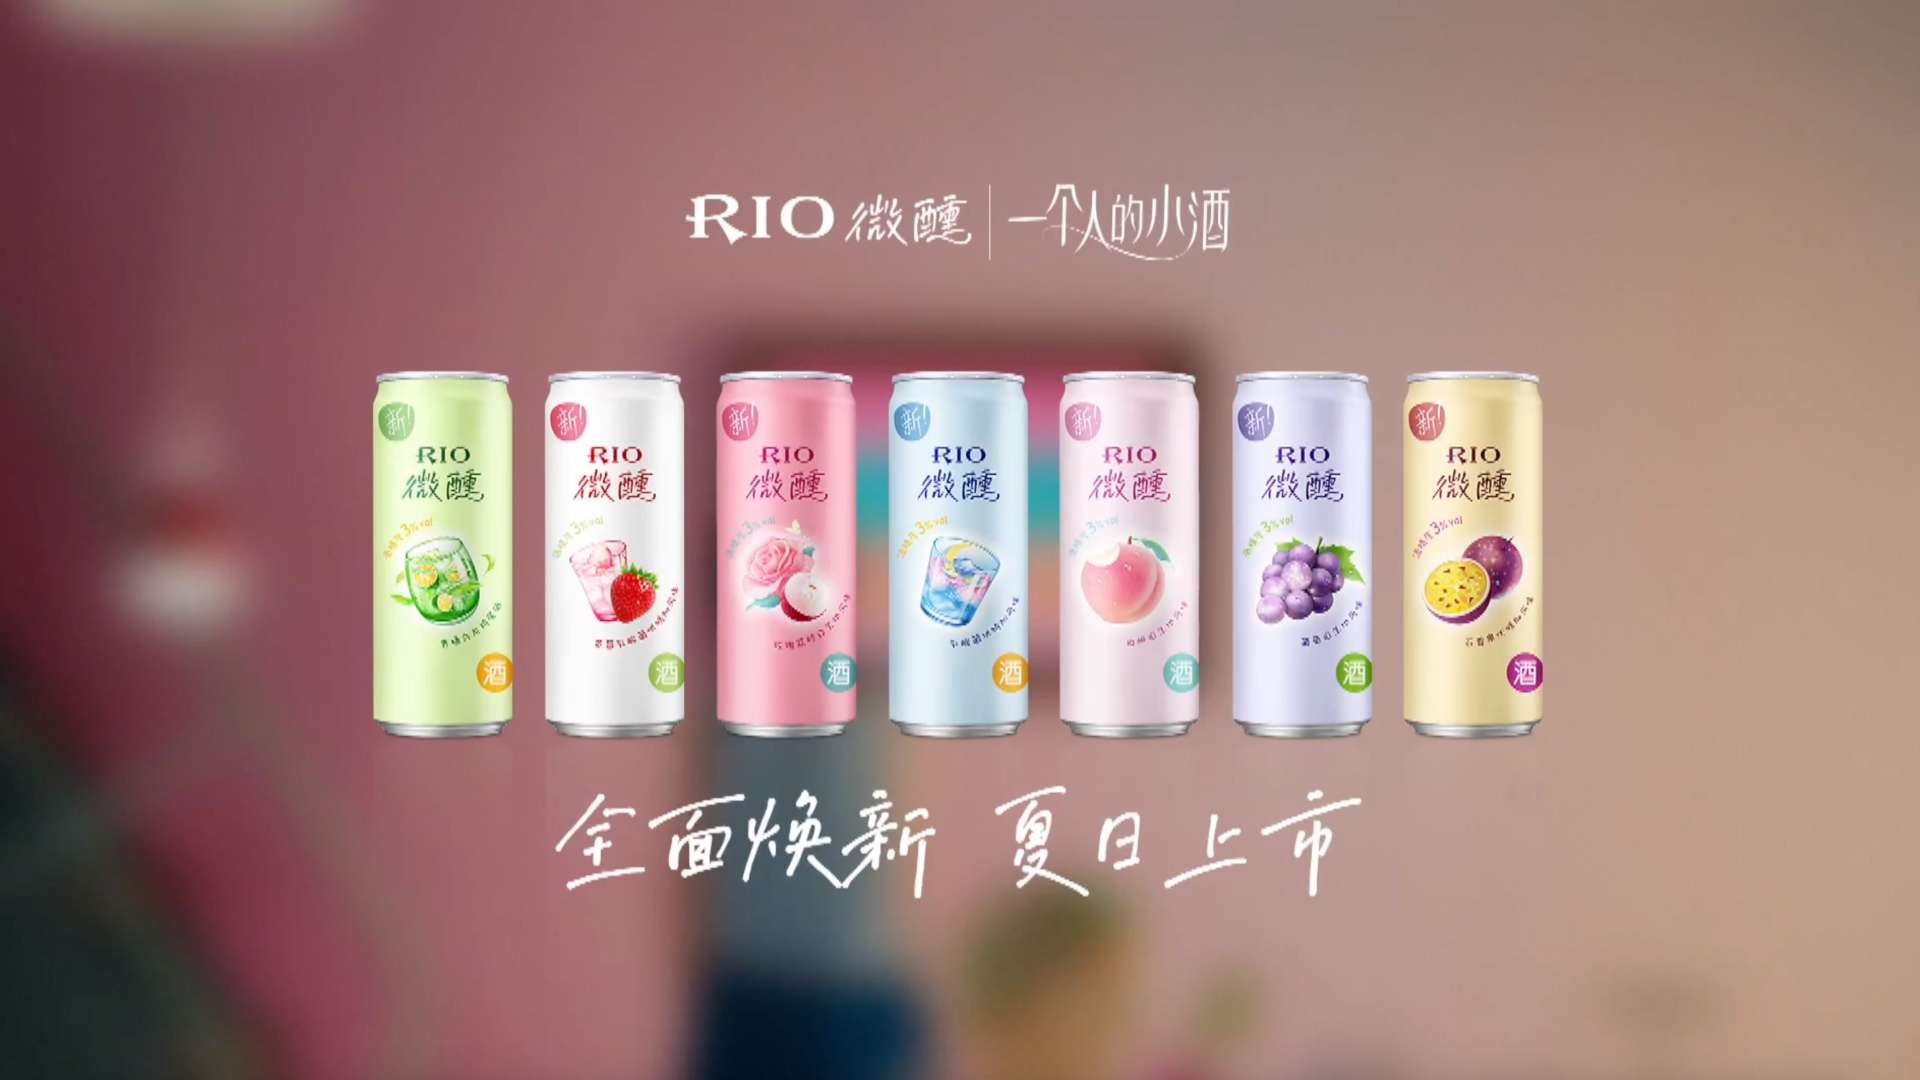 RIO微醺品牌升级 X 张子枫